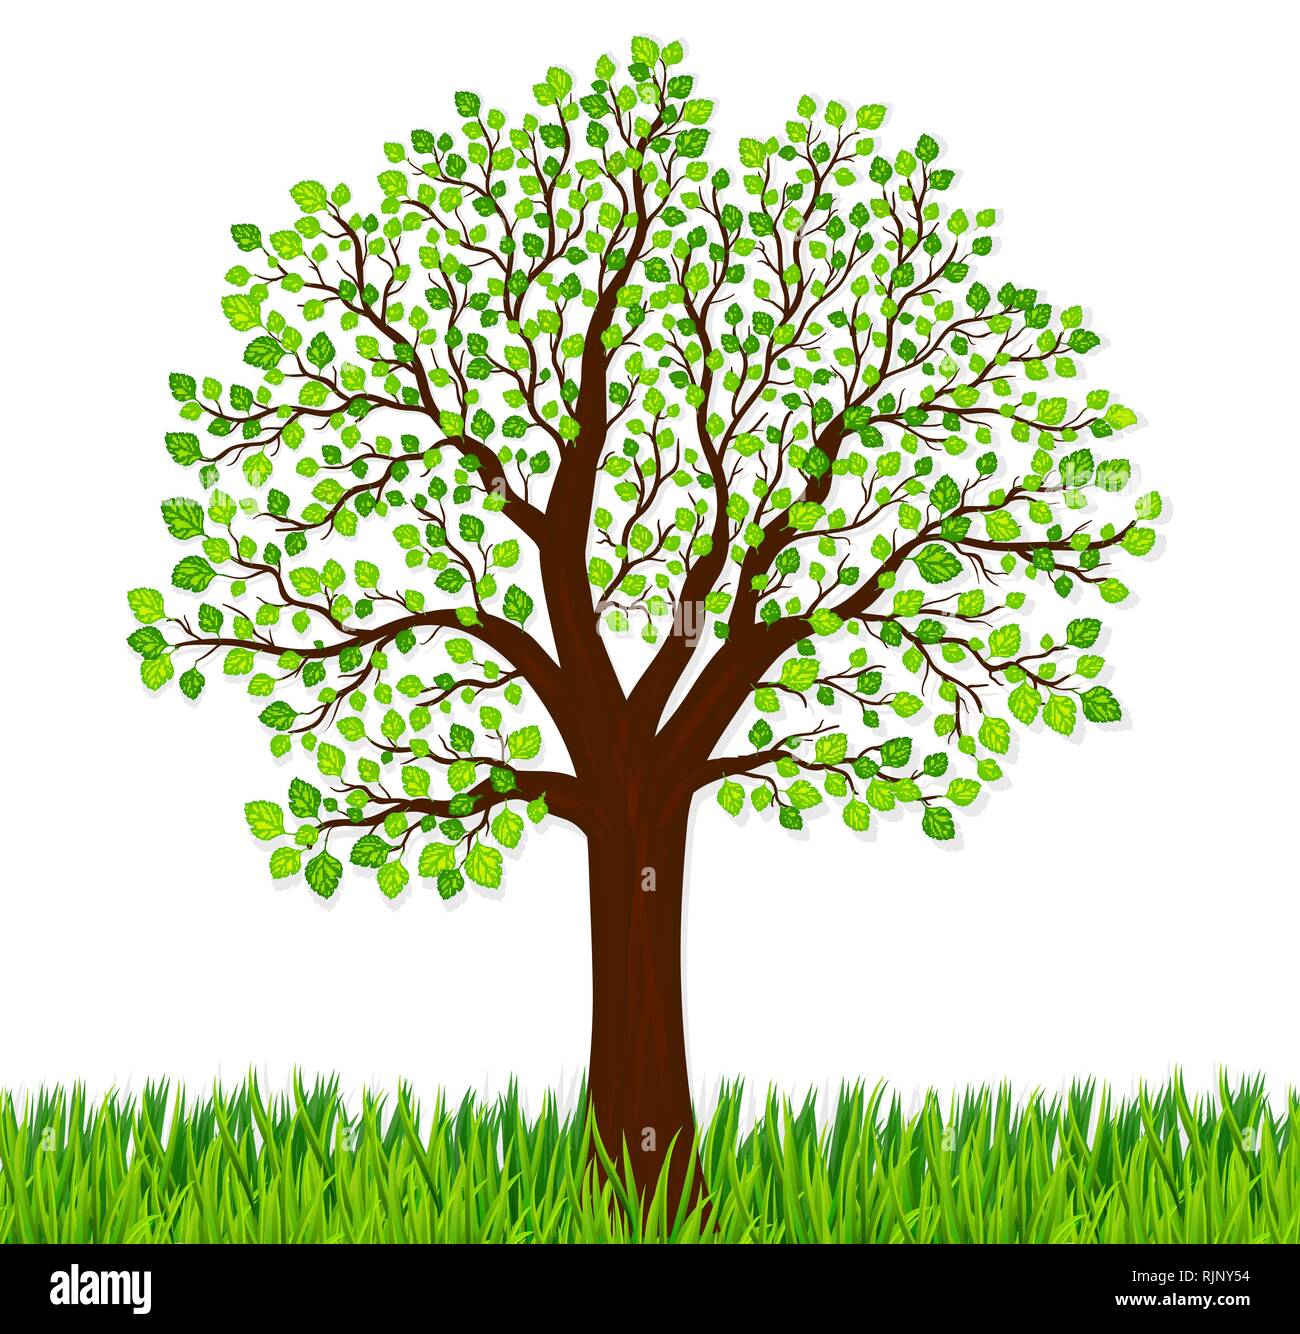 Natur Hintergrund Mit Grunem Gras Und Baum Vektor Stock Vektorgrafik Alamy